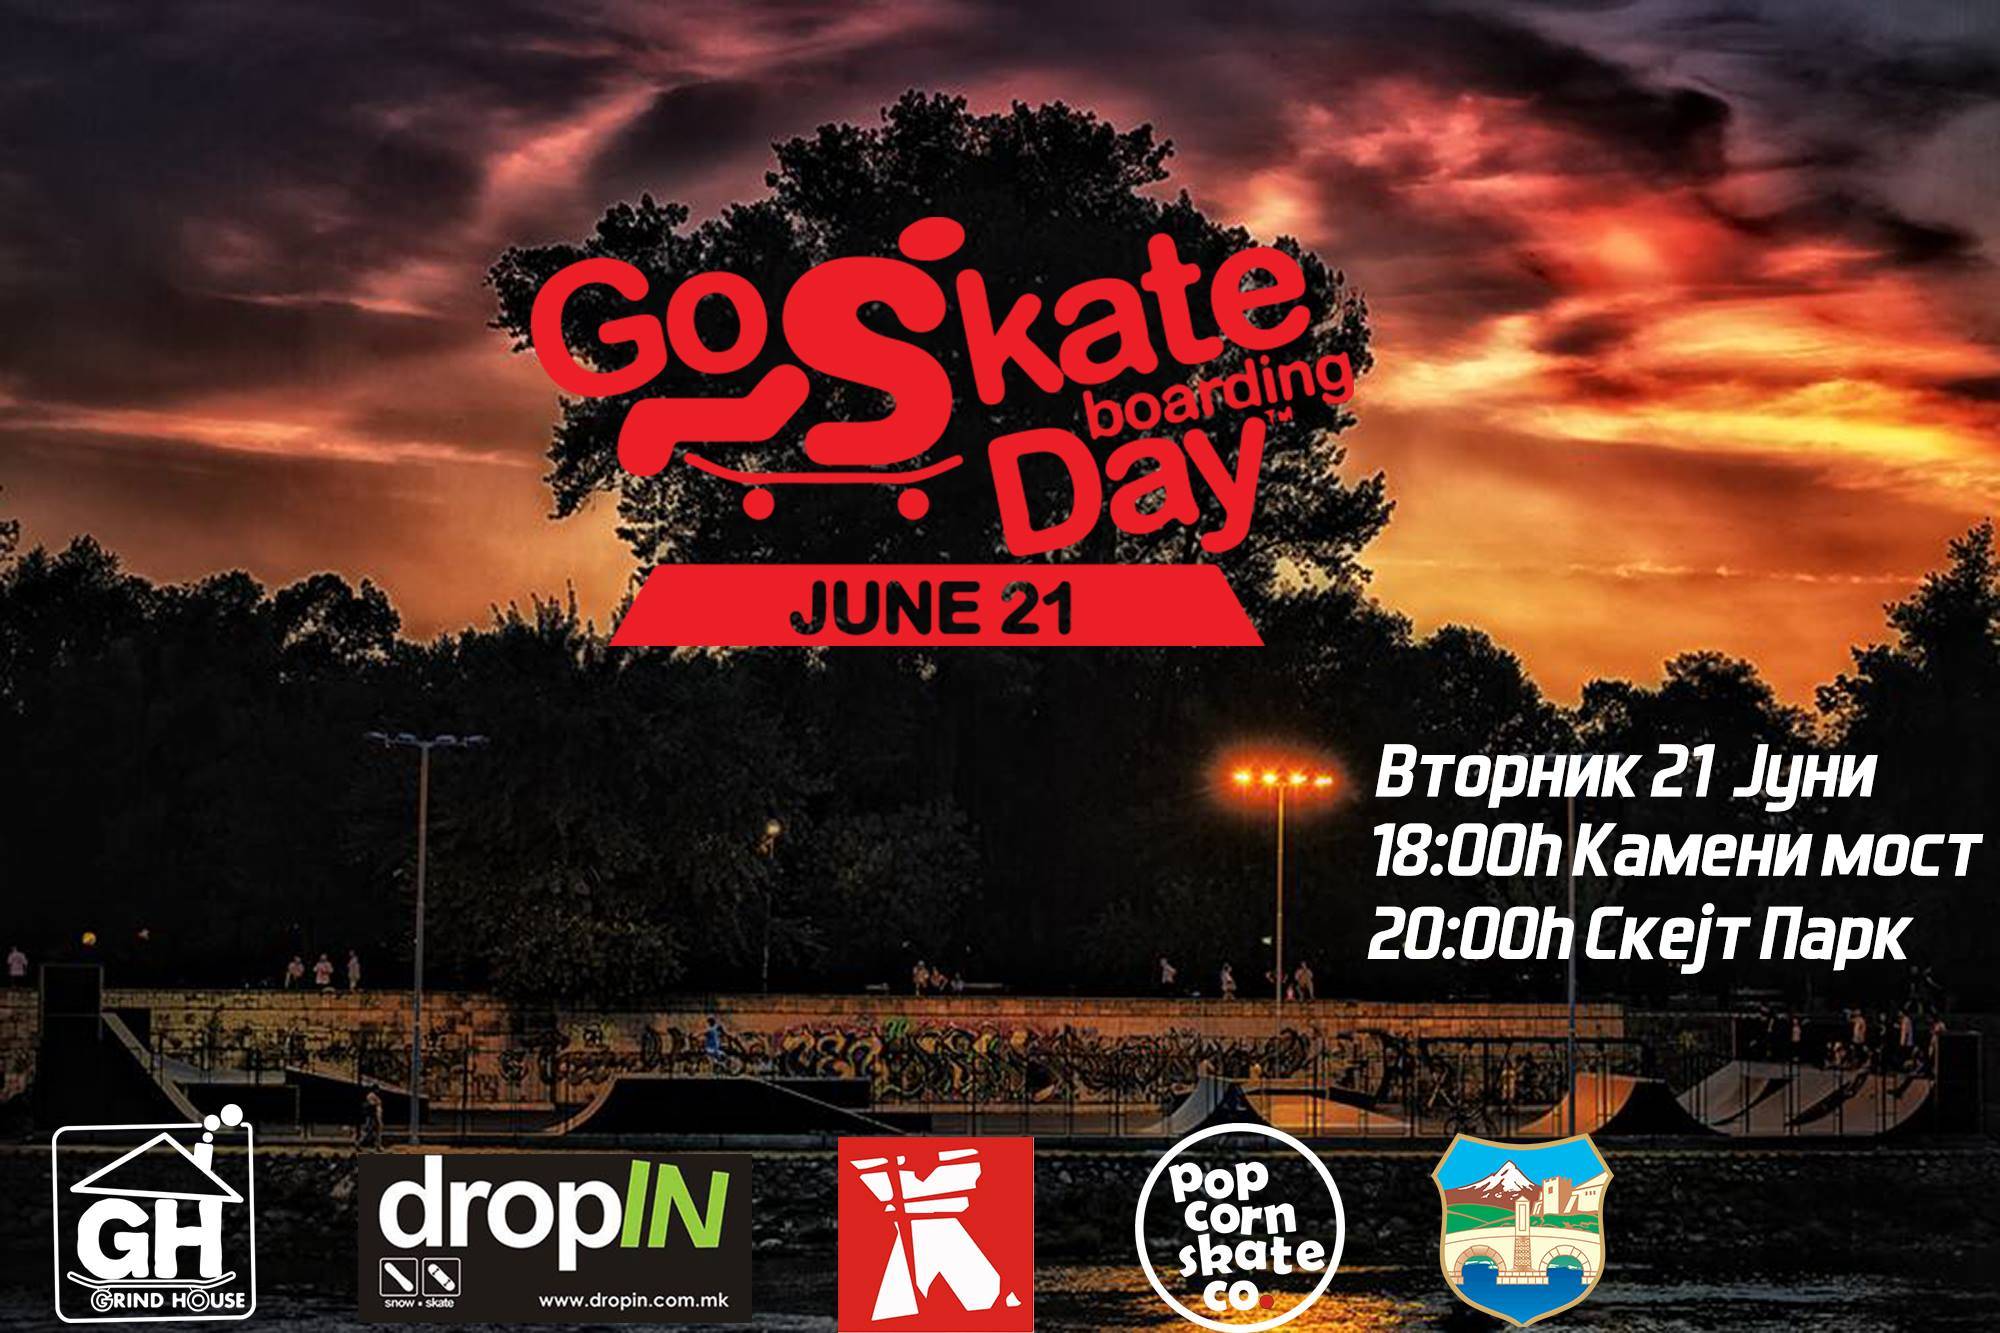 Go skateboarding day - 2016